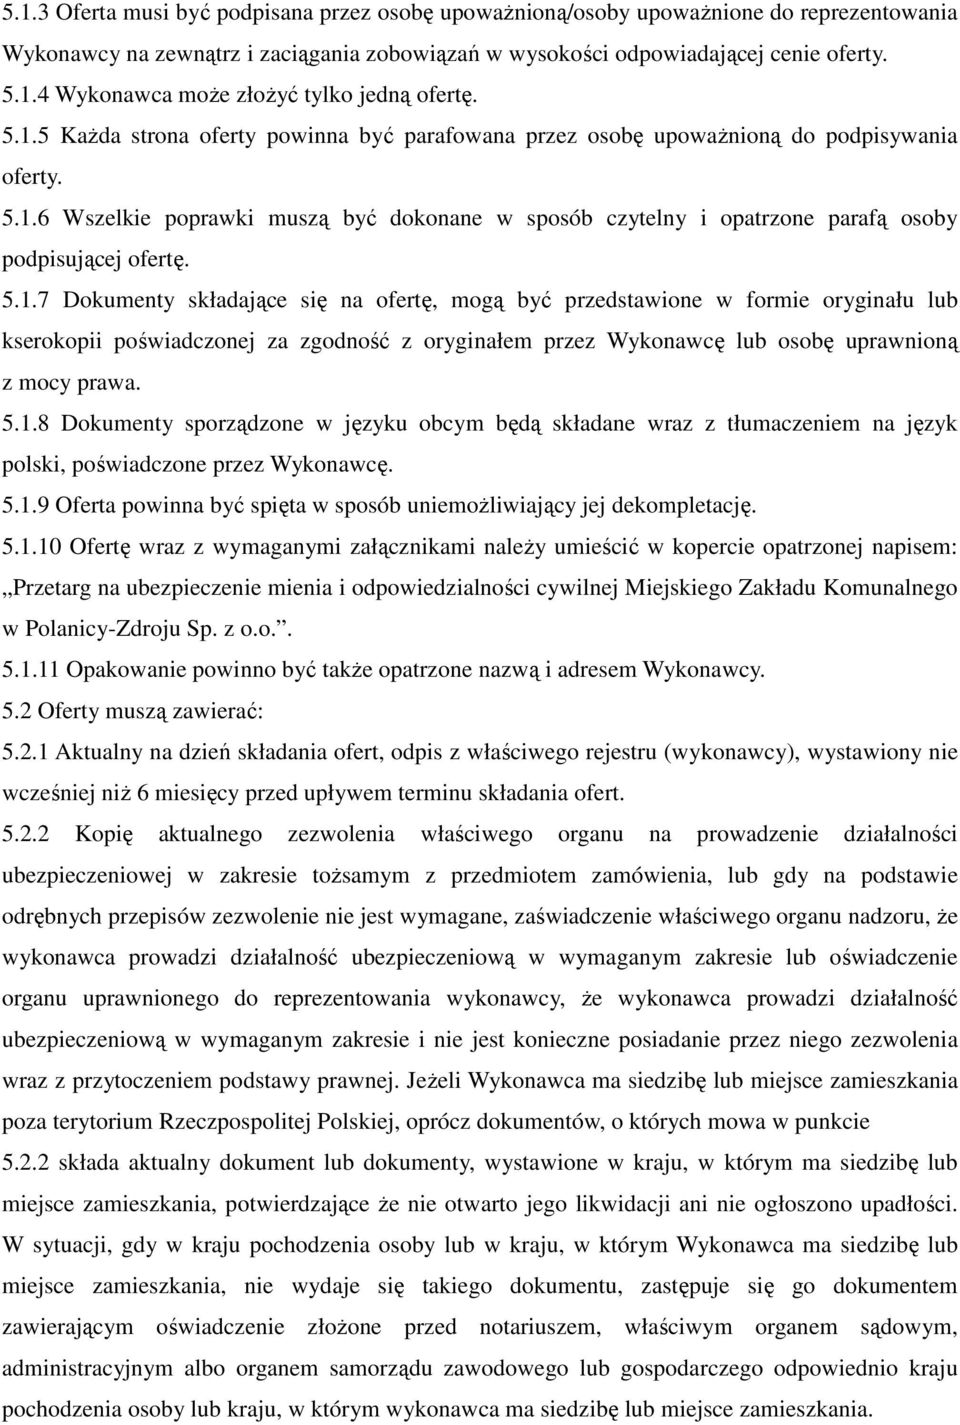 5.1.7 Dokumenty składające się na ofertę, mogą być przedstawione w formie oryginału lub kserokopii poświadczonej za zgodność z oryginałem przez Wykonawcę lub osobę uprawnioną z mocy prawa. 5.1.8 Dokumenty sporządzone w języku obcym będą składane wraz z tłumaczeniem na język polski, poświadczone przez Wykonawcę.